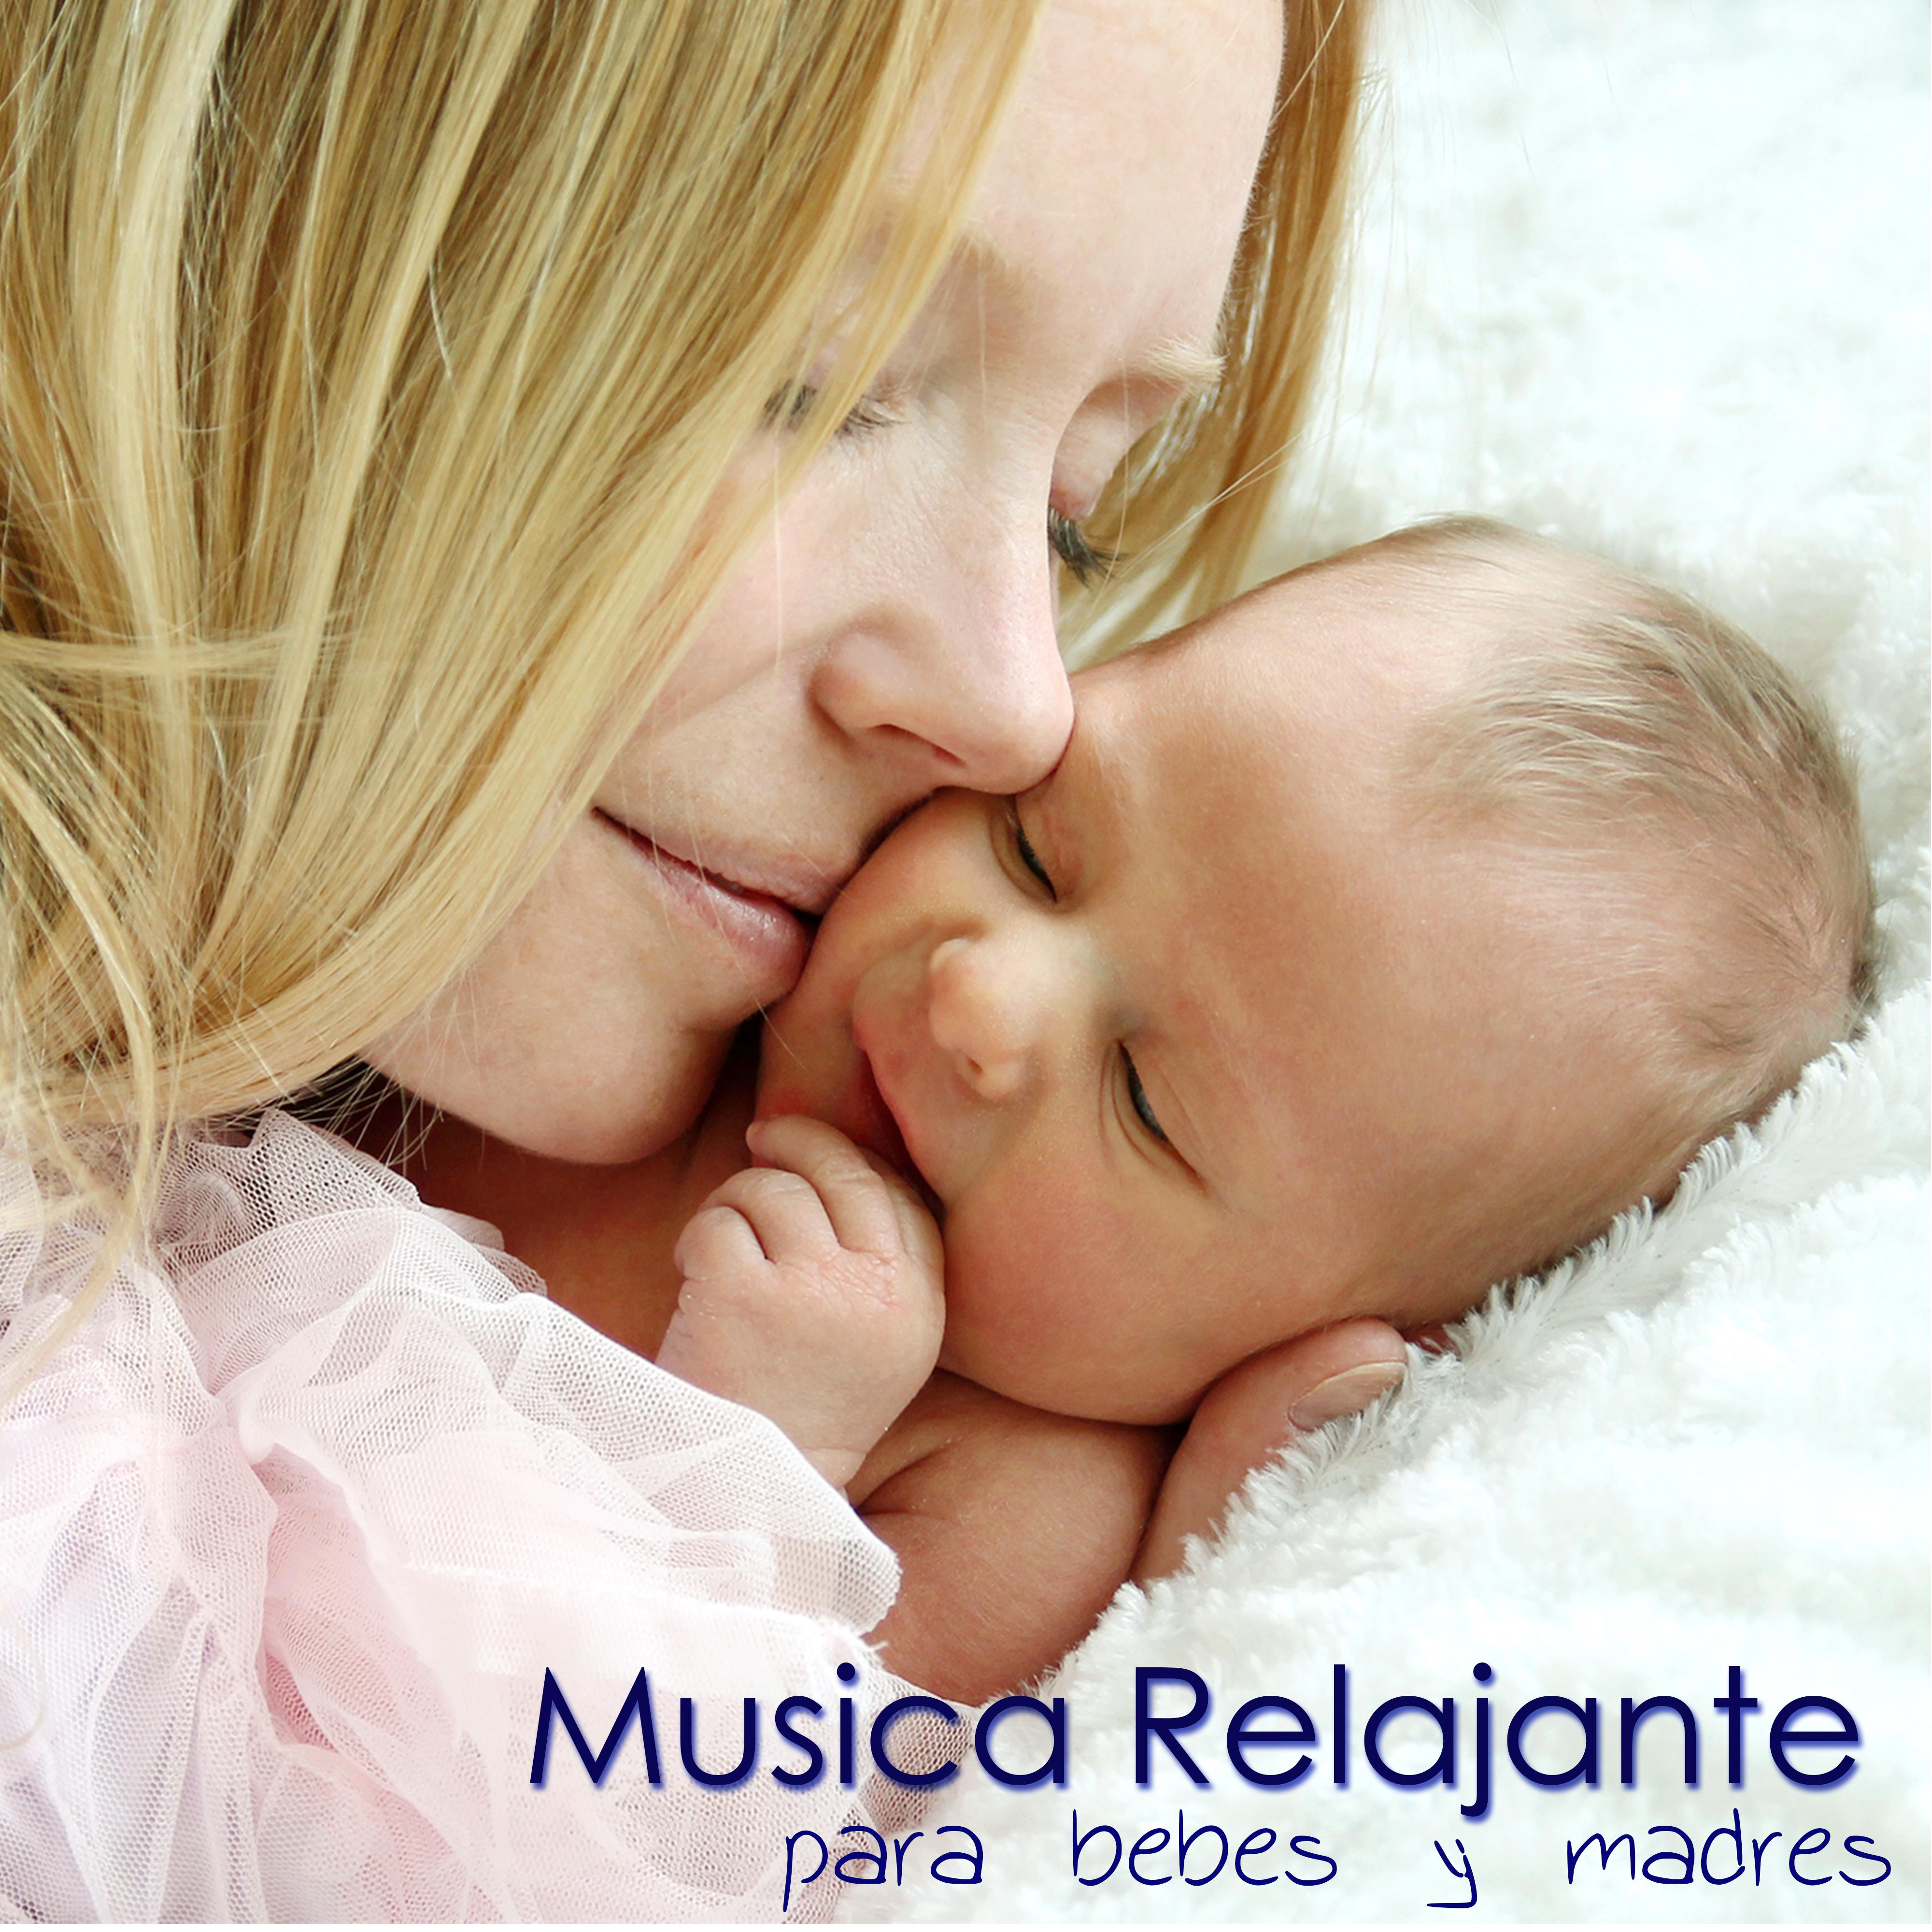 Musica Relajante para Bebes y Madres -  Musica Relajante para Dormir, Musica Suave para Maternidad, Embarazo, Lactacia Materna y para Relajar a los Bebes